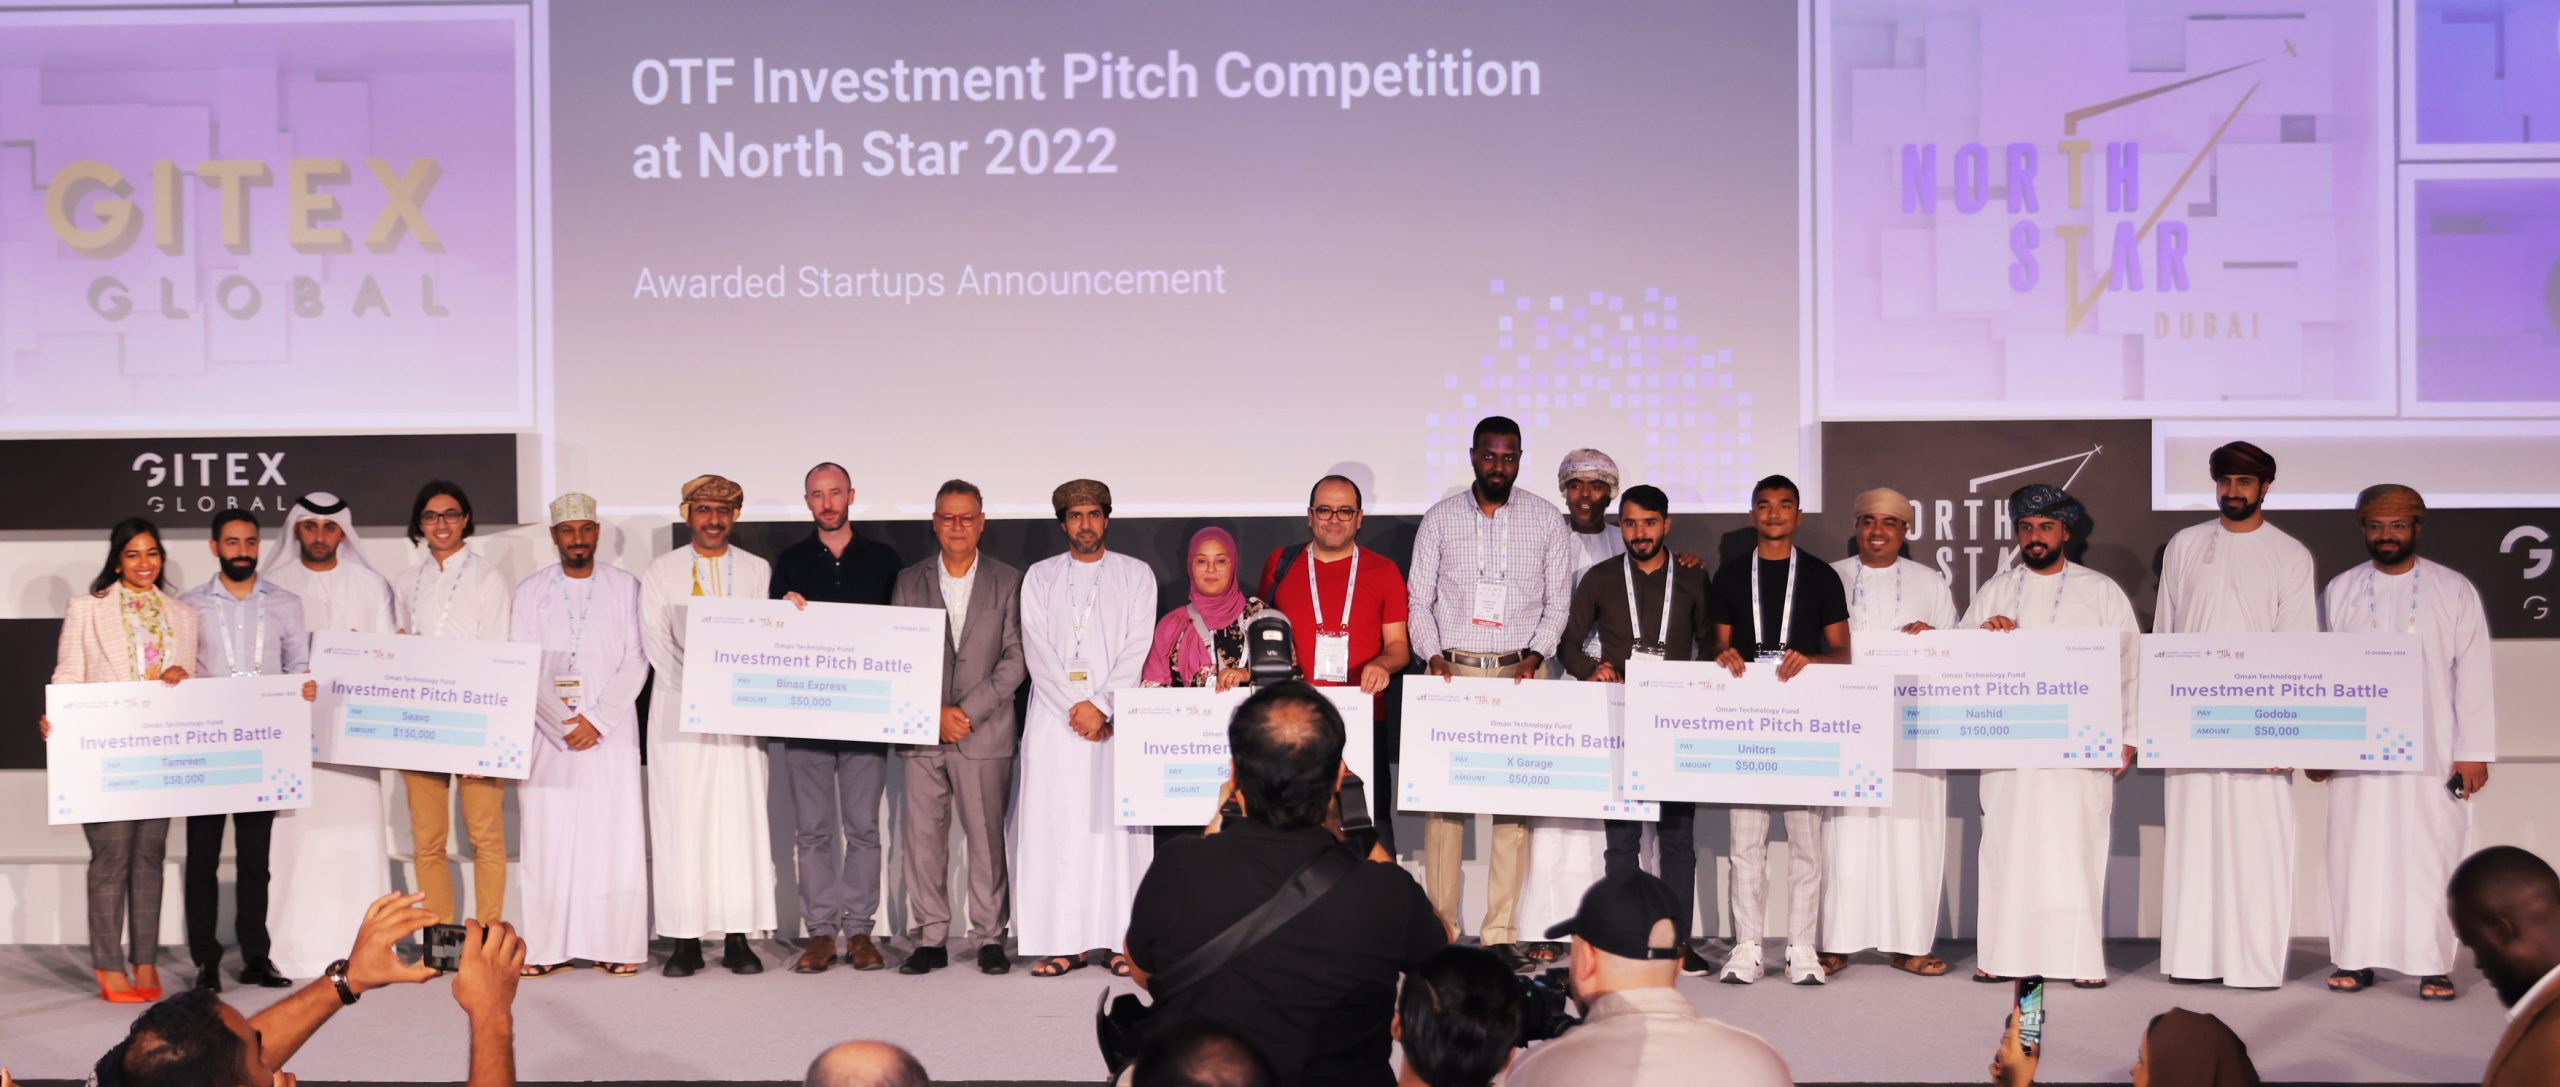 Khởi nghiệp Người chiến thắng Chia sẻ 750.000 Tiền tài trợ đầu tư Được phép của Quỹ Công nghệ Oman Trận chiến quảng cáo chiêu hàng